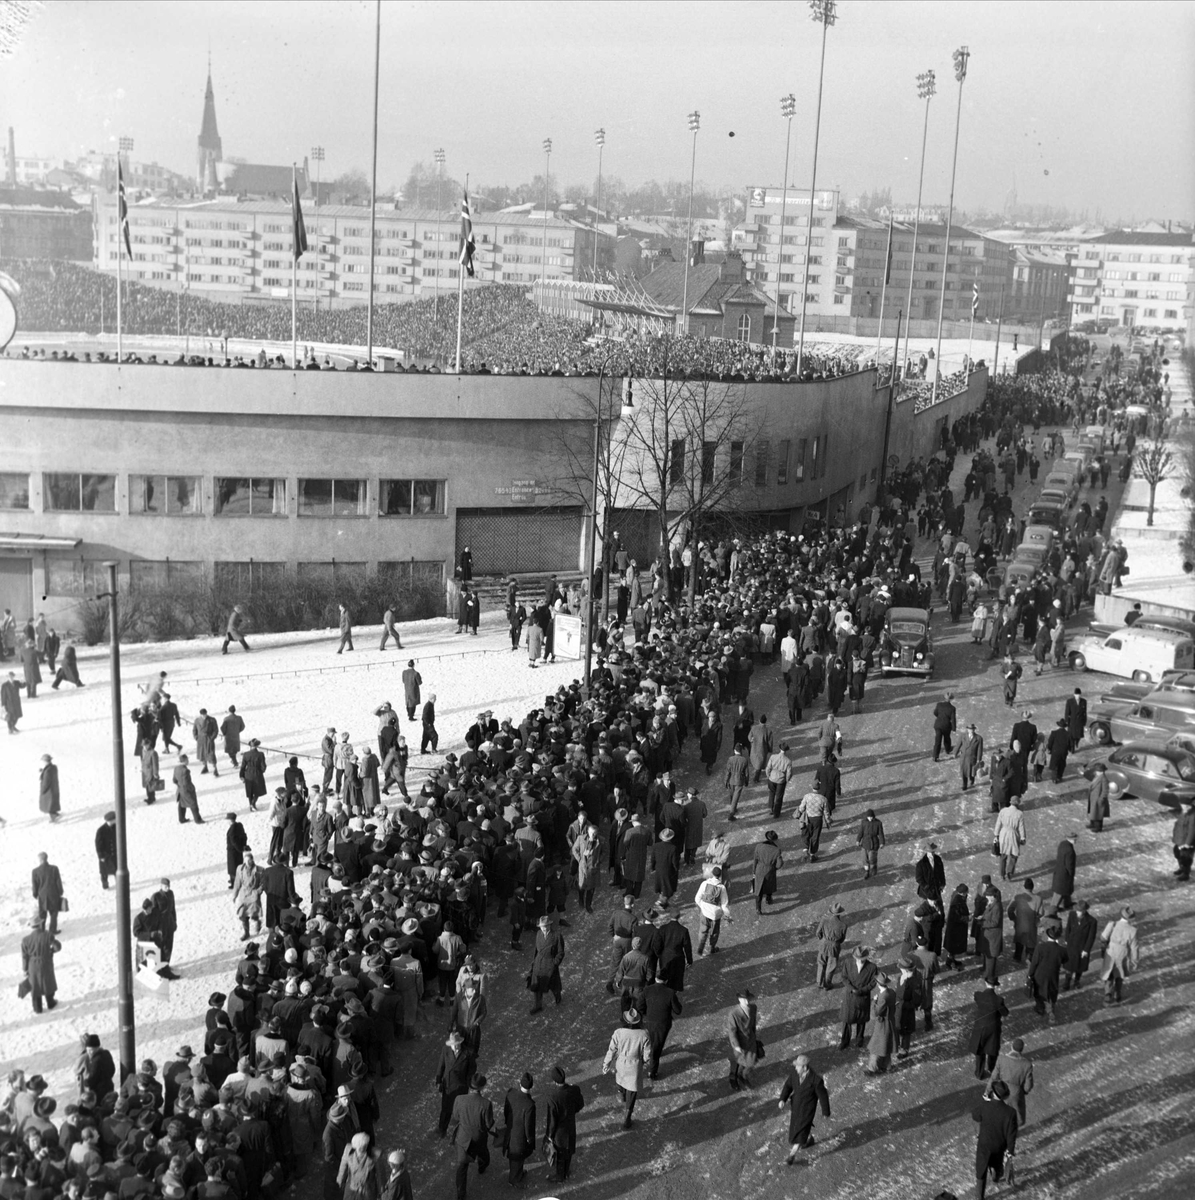 Folkemasser på vei inn til skøyteløp på Bislett stadion. 26.2.1955